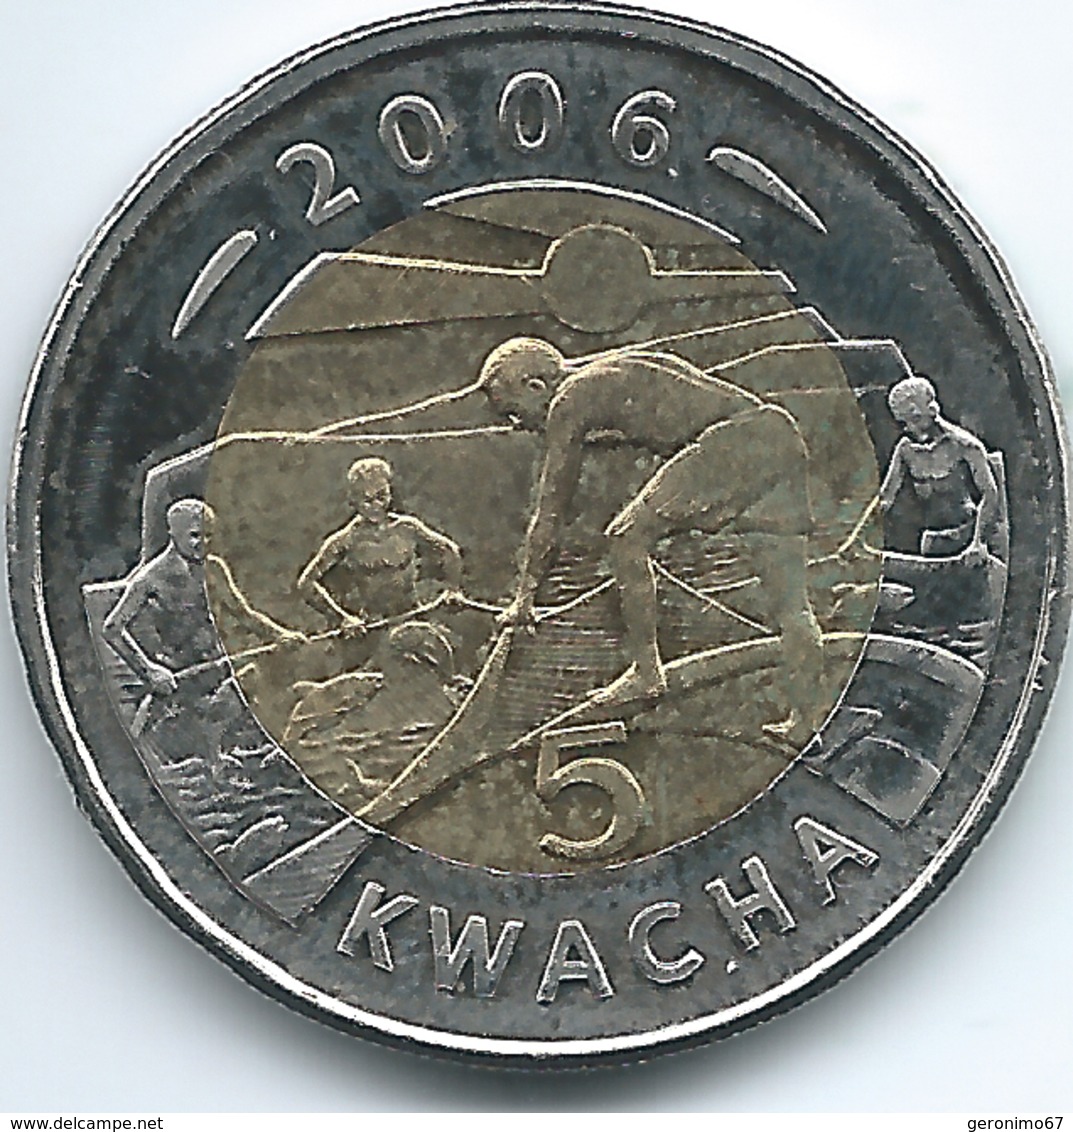 Malawi - 5 Kwacha - 2006 - KM57 - Malawi